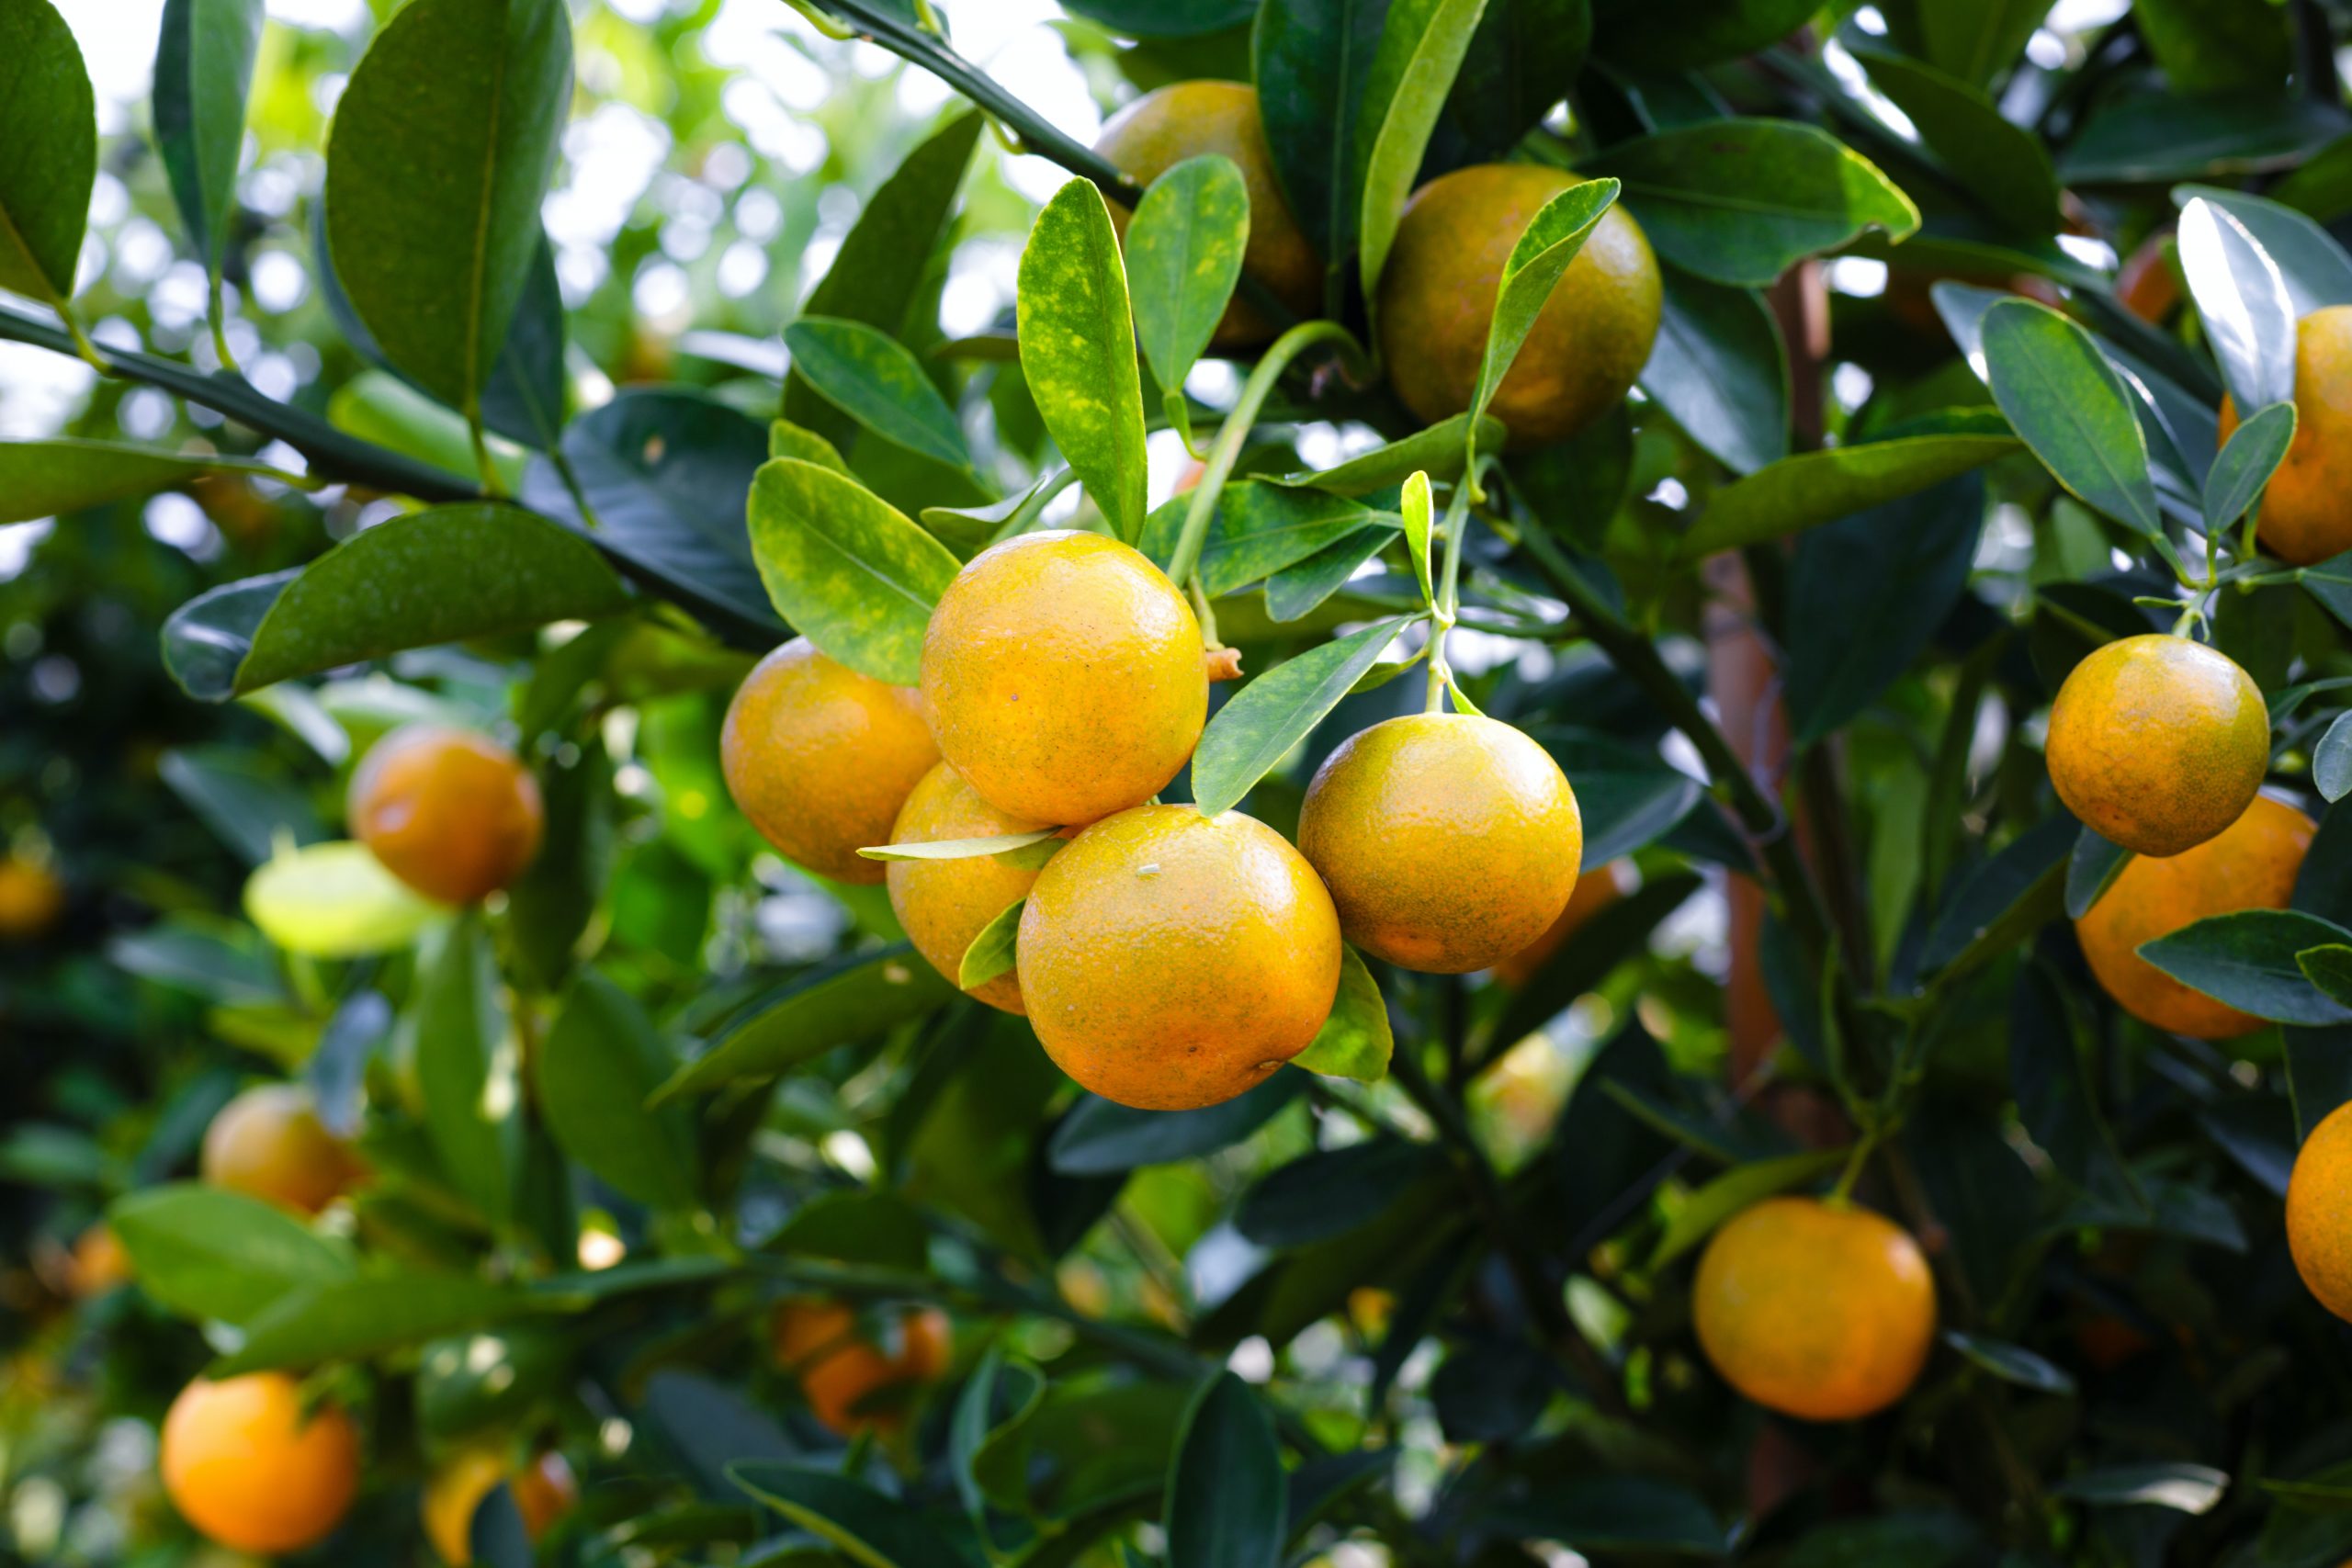 Orange fruit health benefit or disadvantage